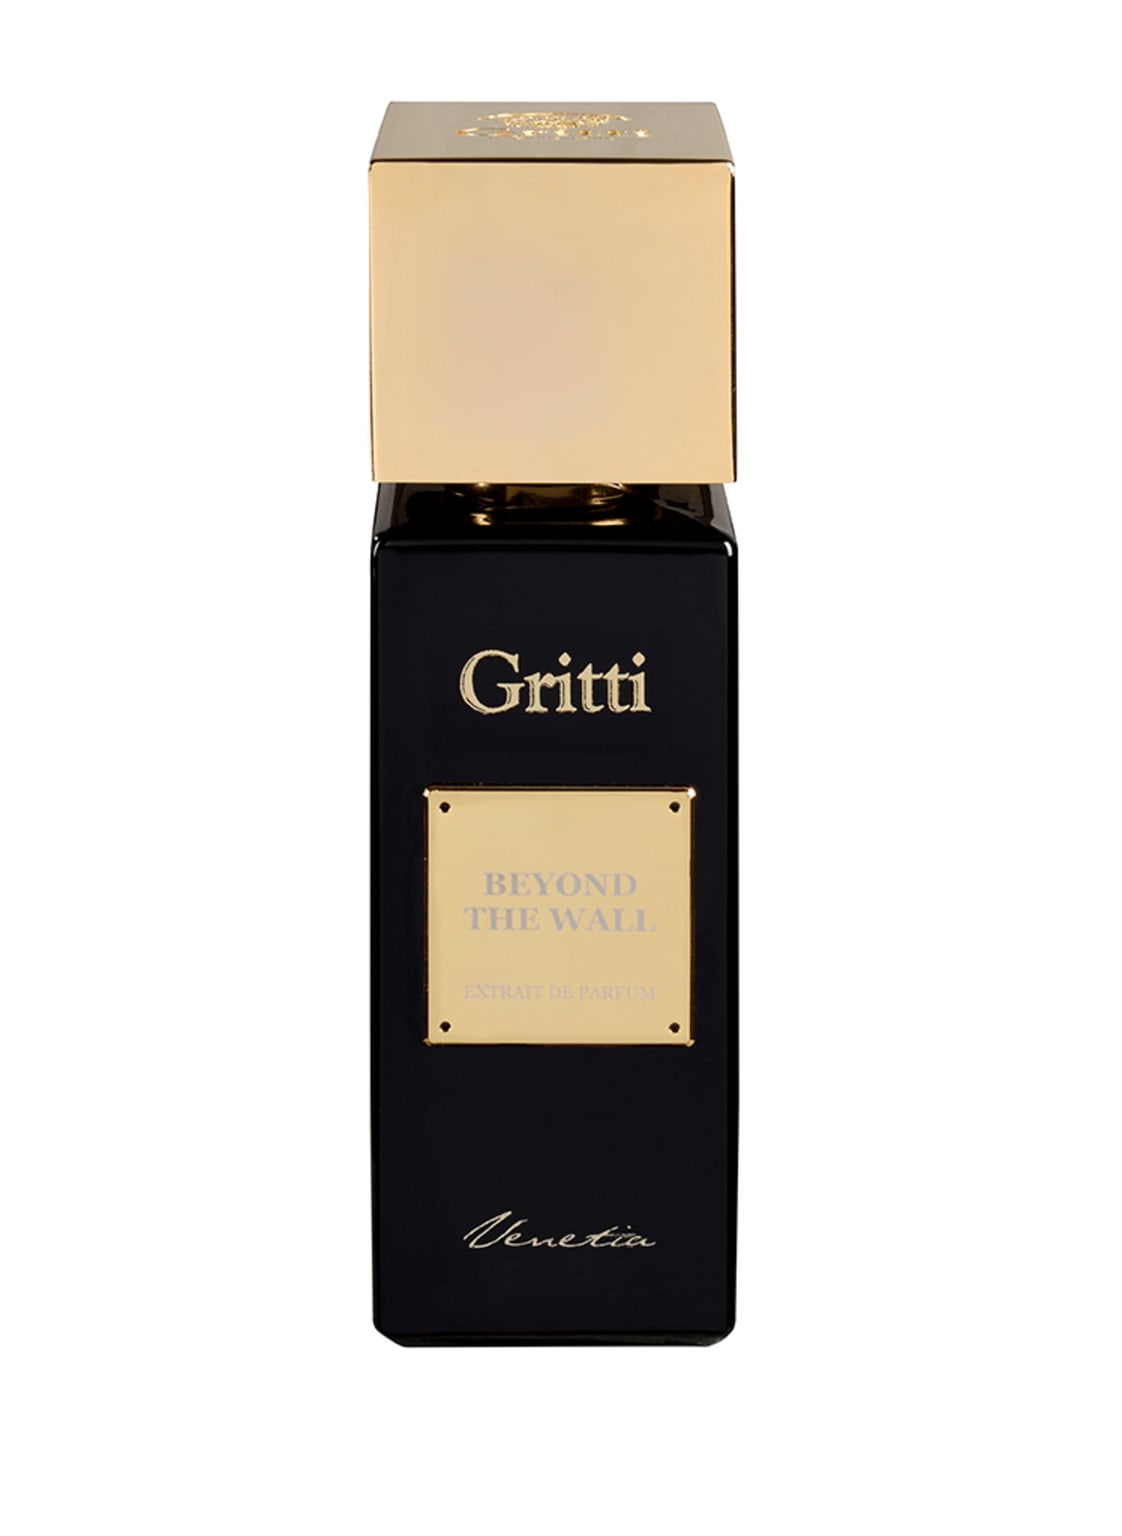 Gritti Beyond The Wall Extrait de Parfum 100 ml von Gritti